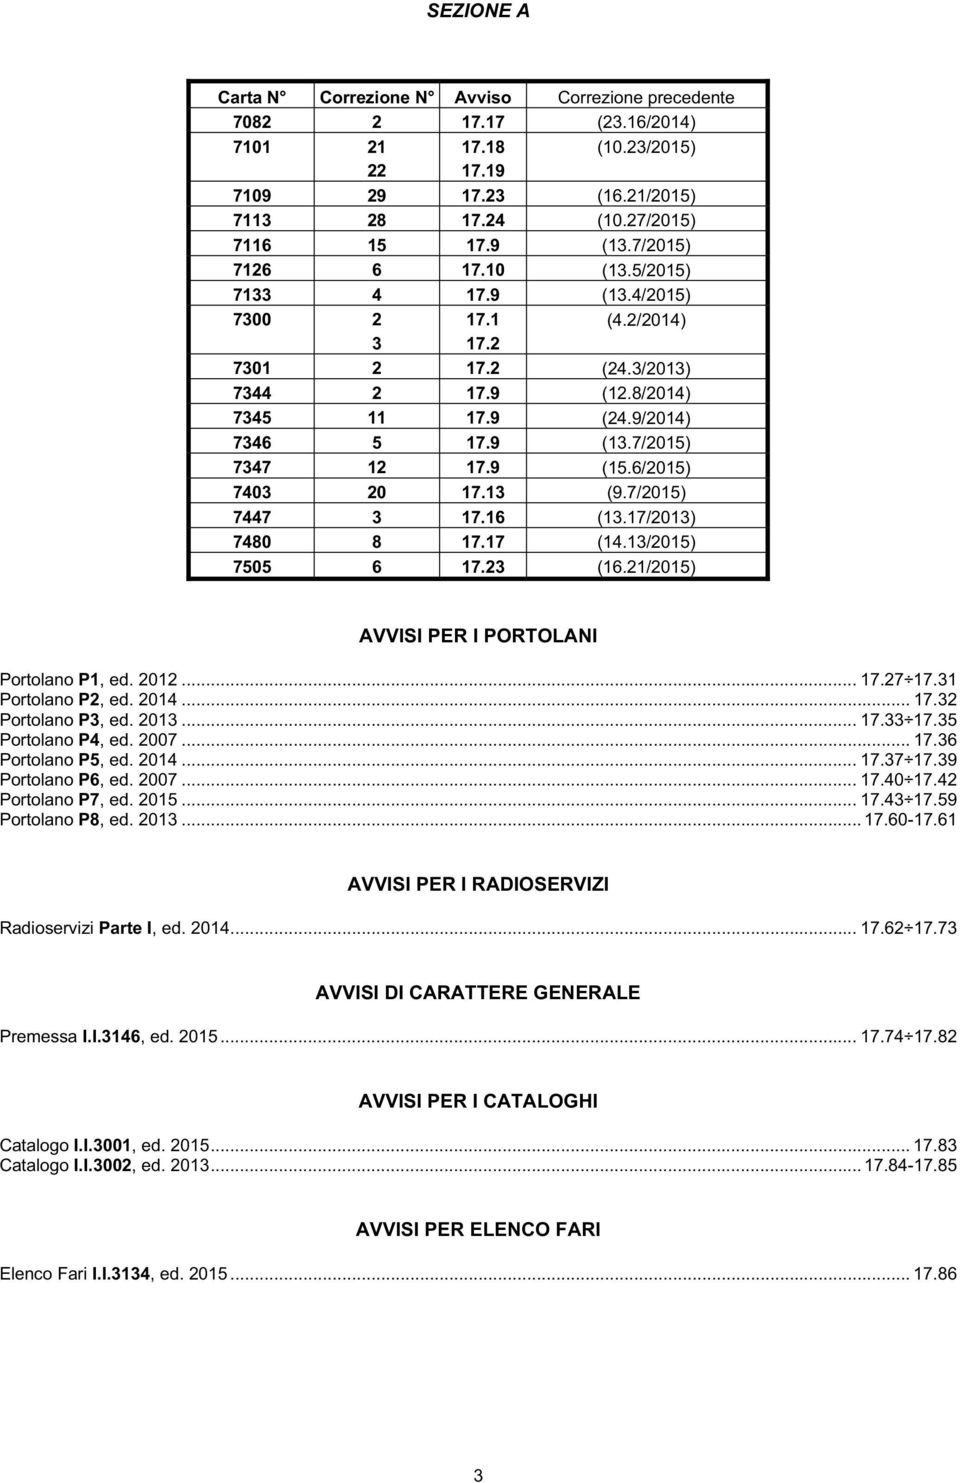 9 (15.6/2015) 7403 20 17.13 (9.7/2015) 7447 3 17.16 (13.17/2013) 7480 8 17.17 (14.13/2015) 7505 6 17.23 (16.21/2015) AVVISI PER I PORTOLANI Portolano P1, ed. 2012... 17.27 17.31 Portolano P2, ed.